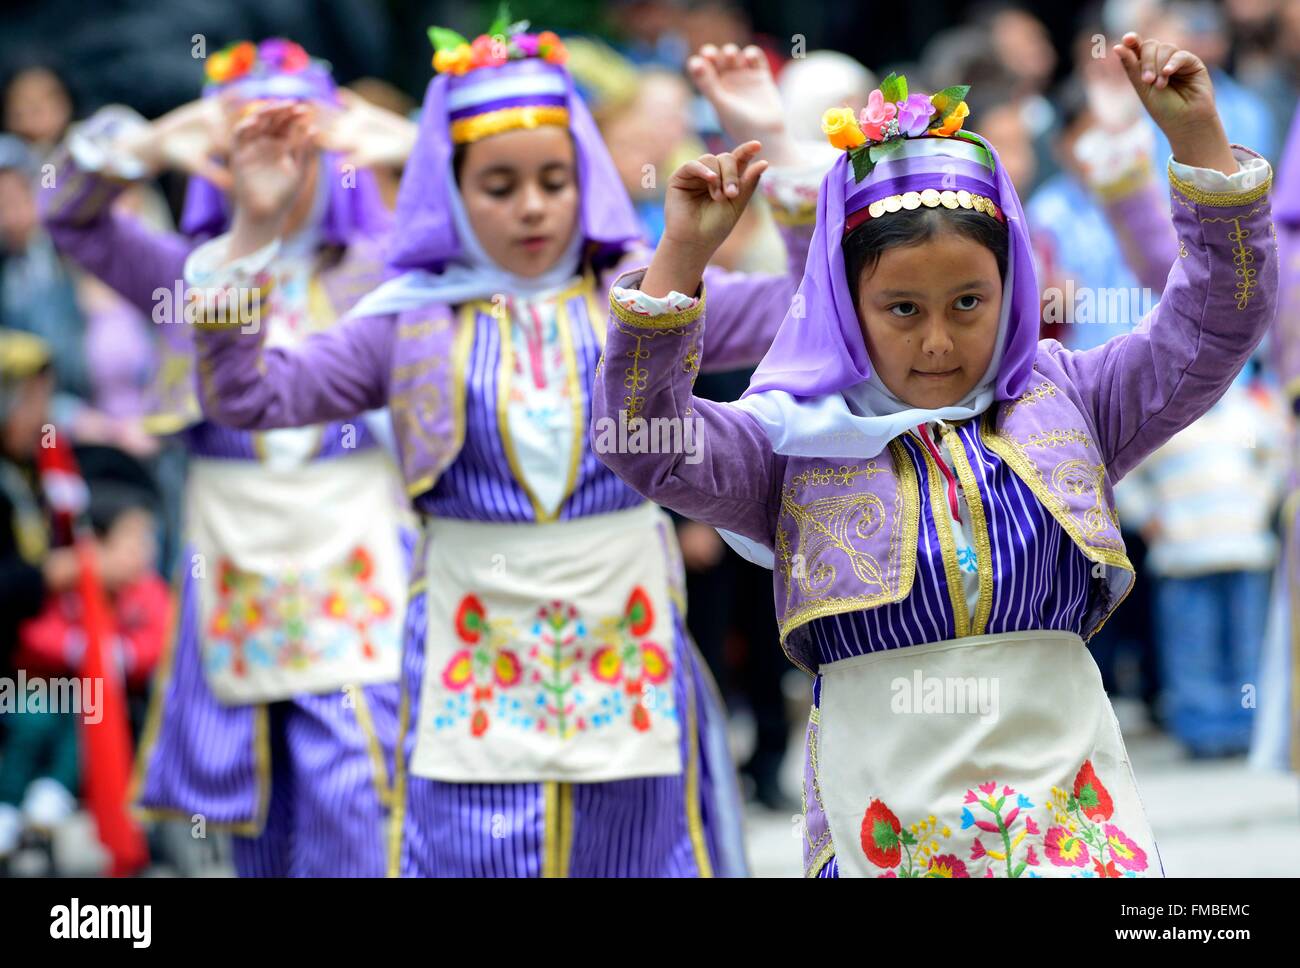 La Turquie, région de Marmara, Bandirma, pour les enfants au cours d'un spectacle traditionnel à l'occasion de la fête nationale turque Banque D'Images